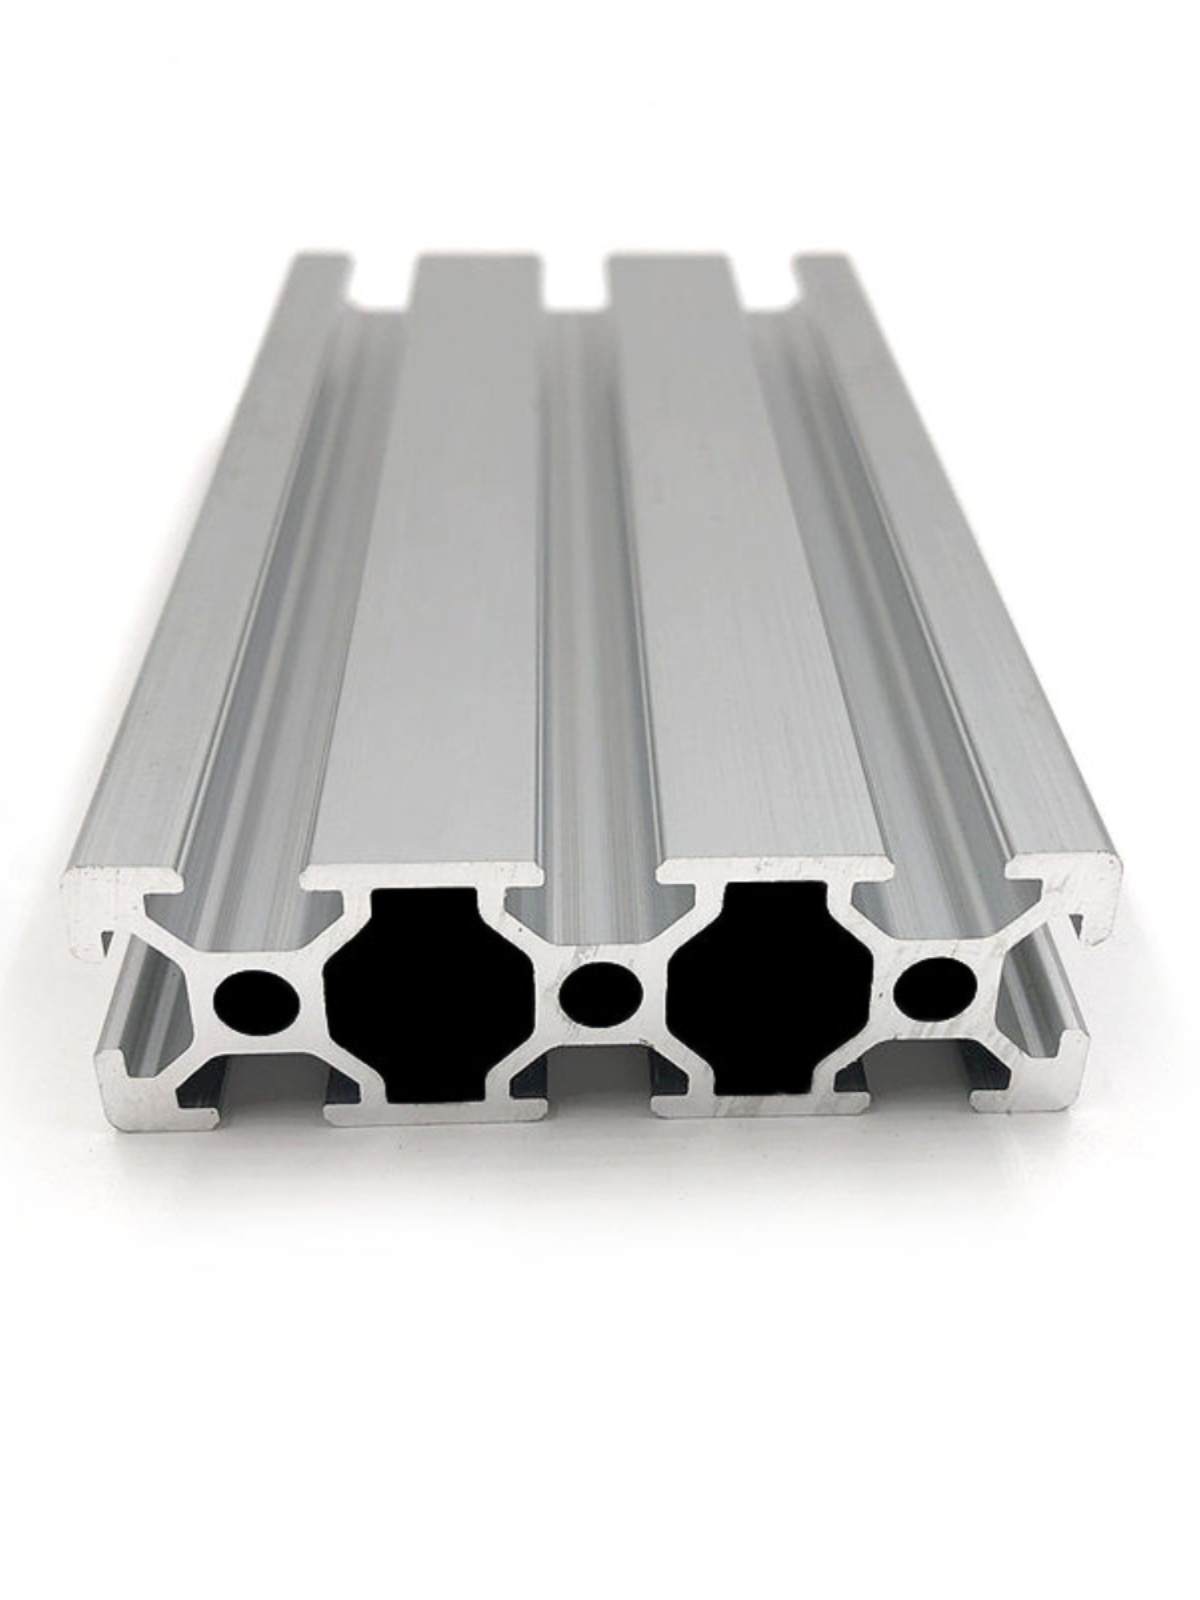 2060工业铝型材铝杆子输送线台面专用铝合金流水线机架台面用铝材